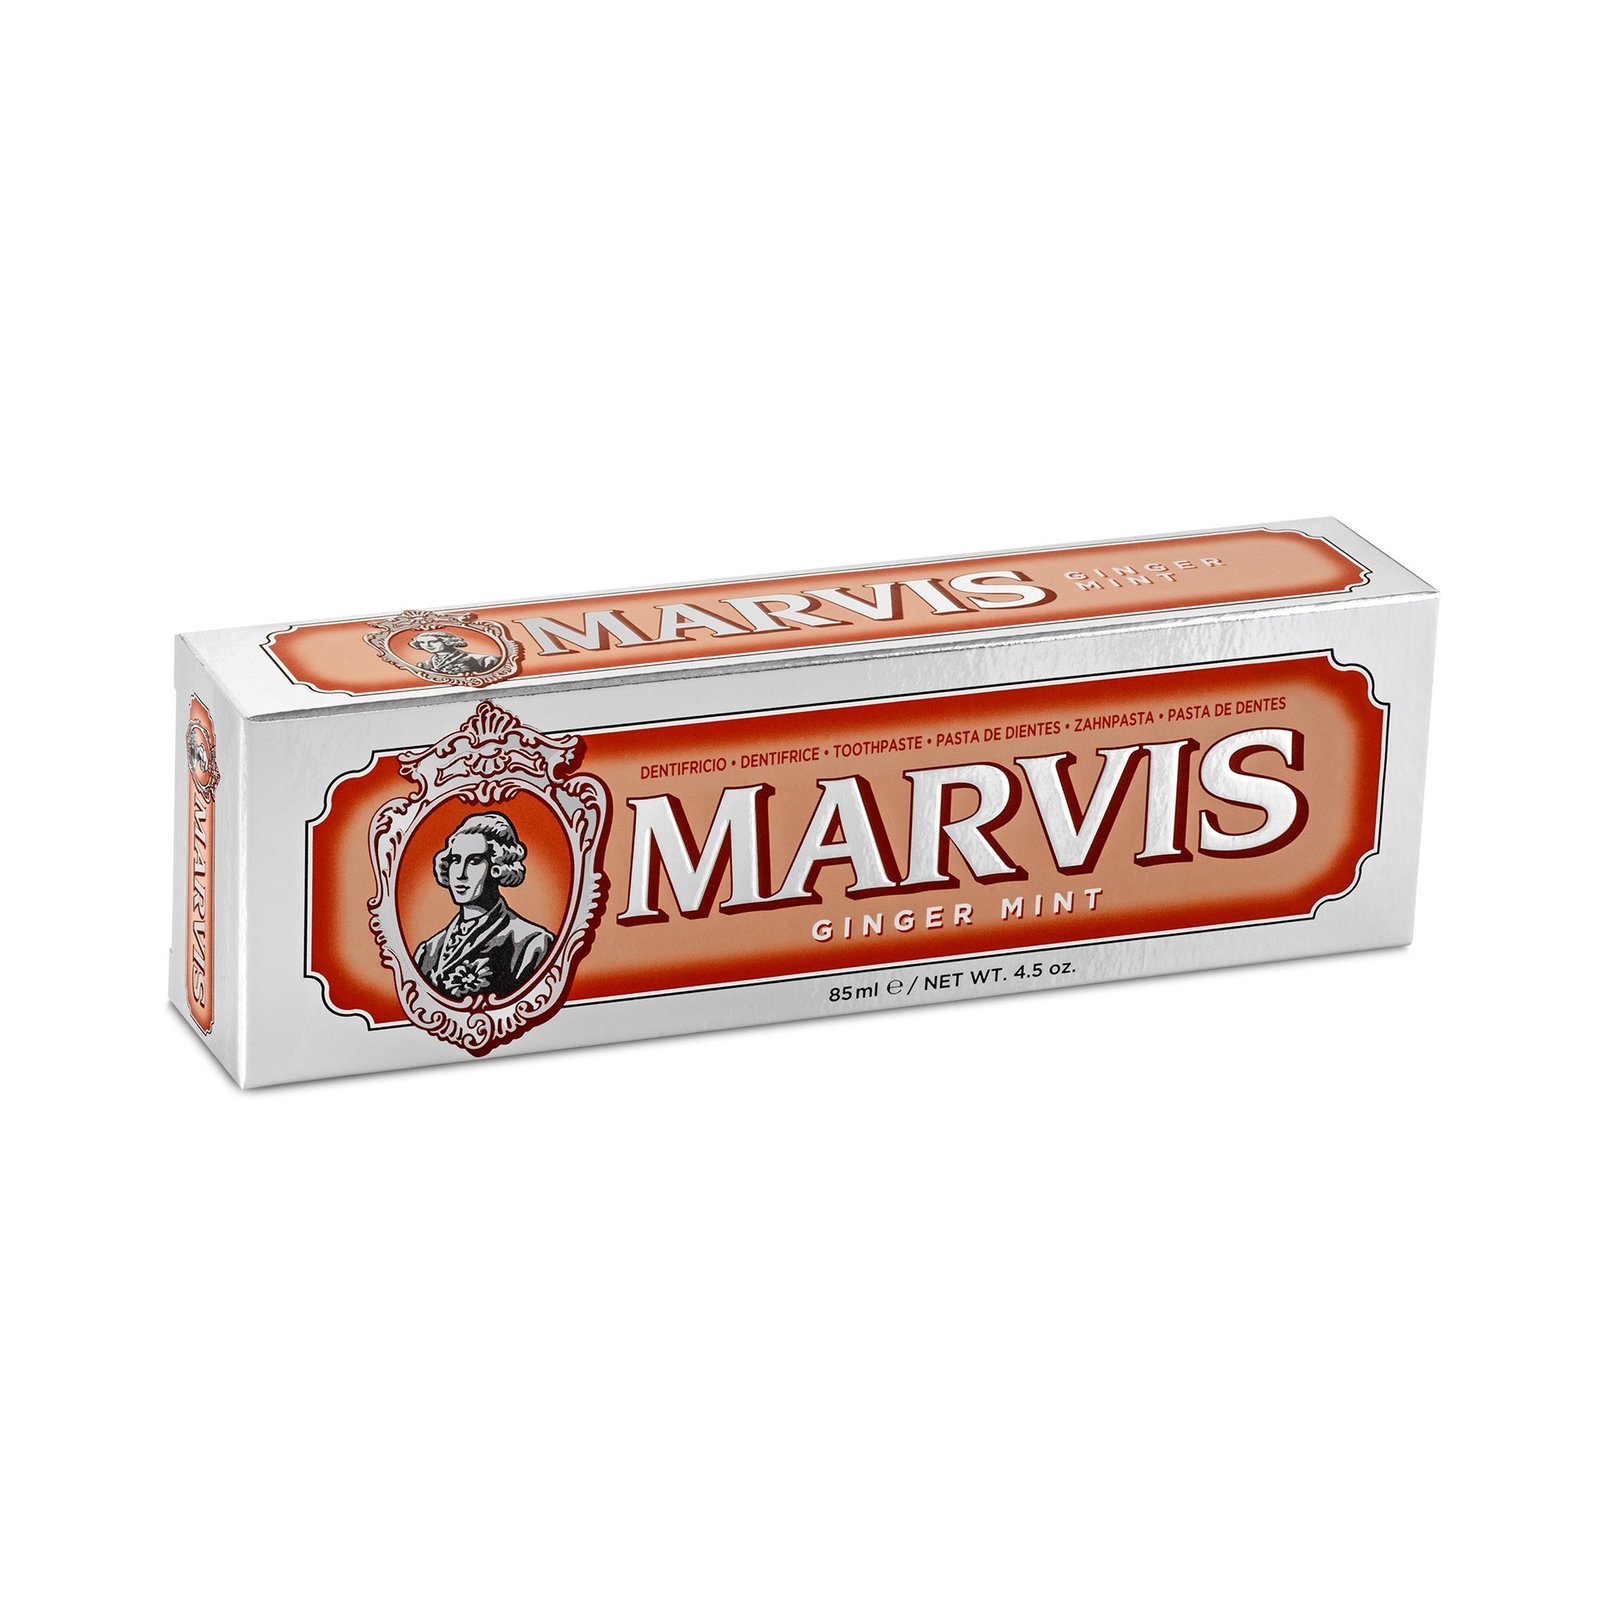 Marvis Ginger Mint 85ml